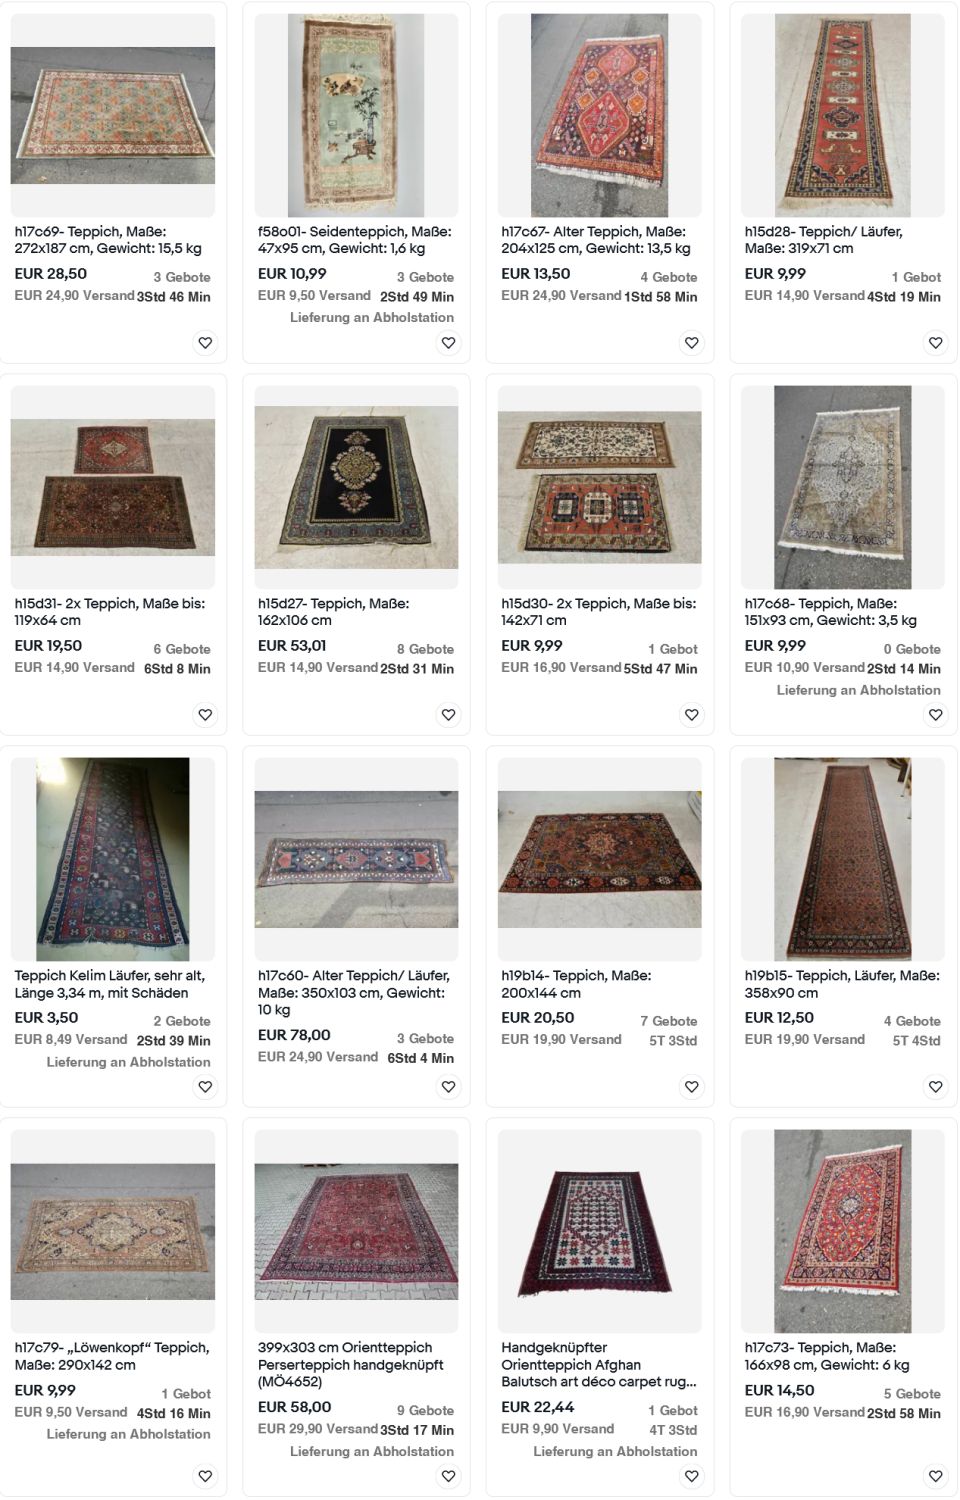 Auktionen Antike Teppiche - Jetzt an der Auktion teilnehmen und einen antiken Teppich ersteigern